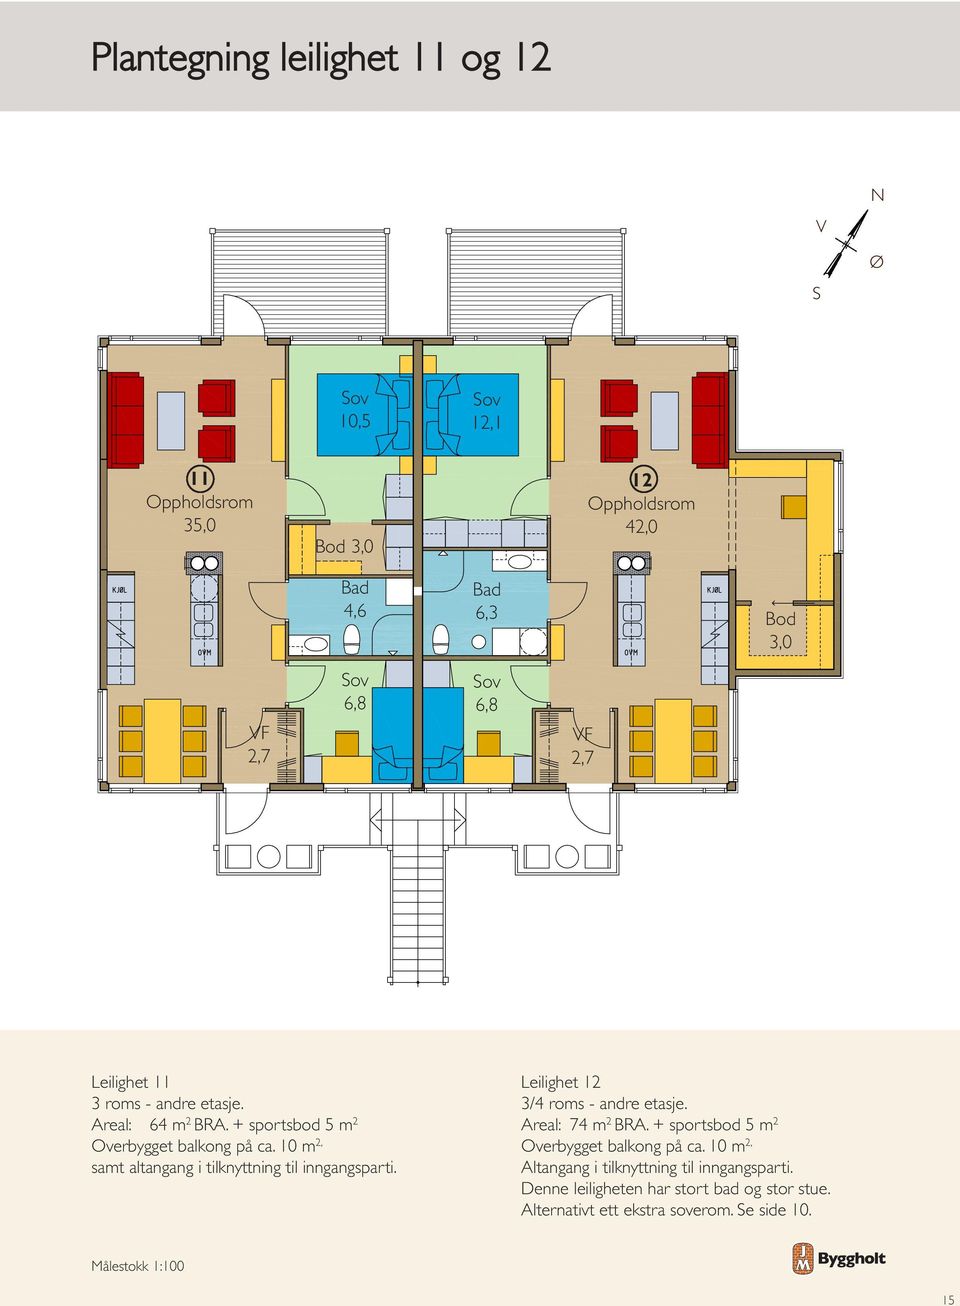 Leilighet 12 3/4 roms - andre etasje. Areal: 74 m 2 BRA. + sportsbod 5 m 2 Overbygget balkong på ca.